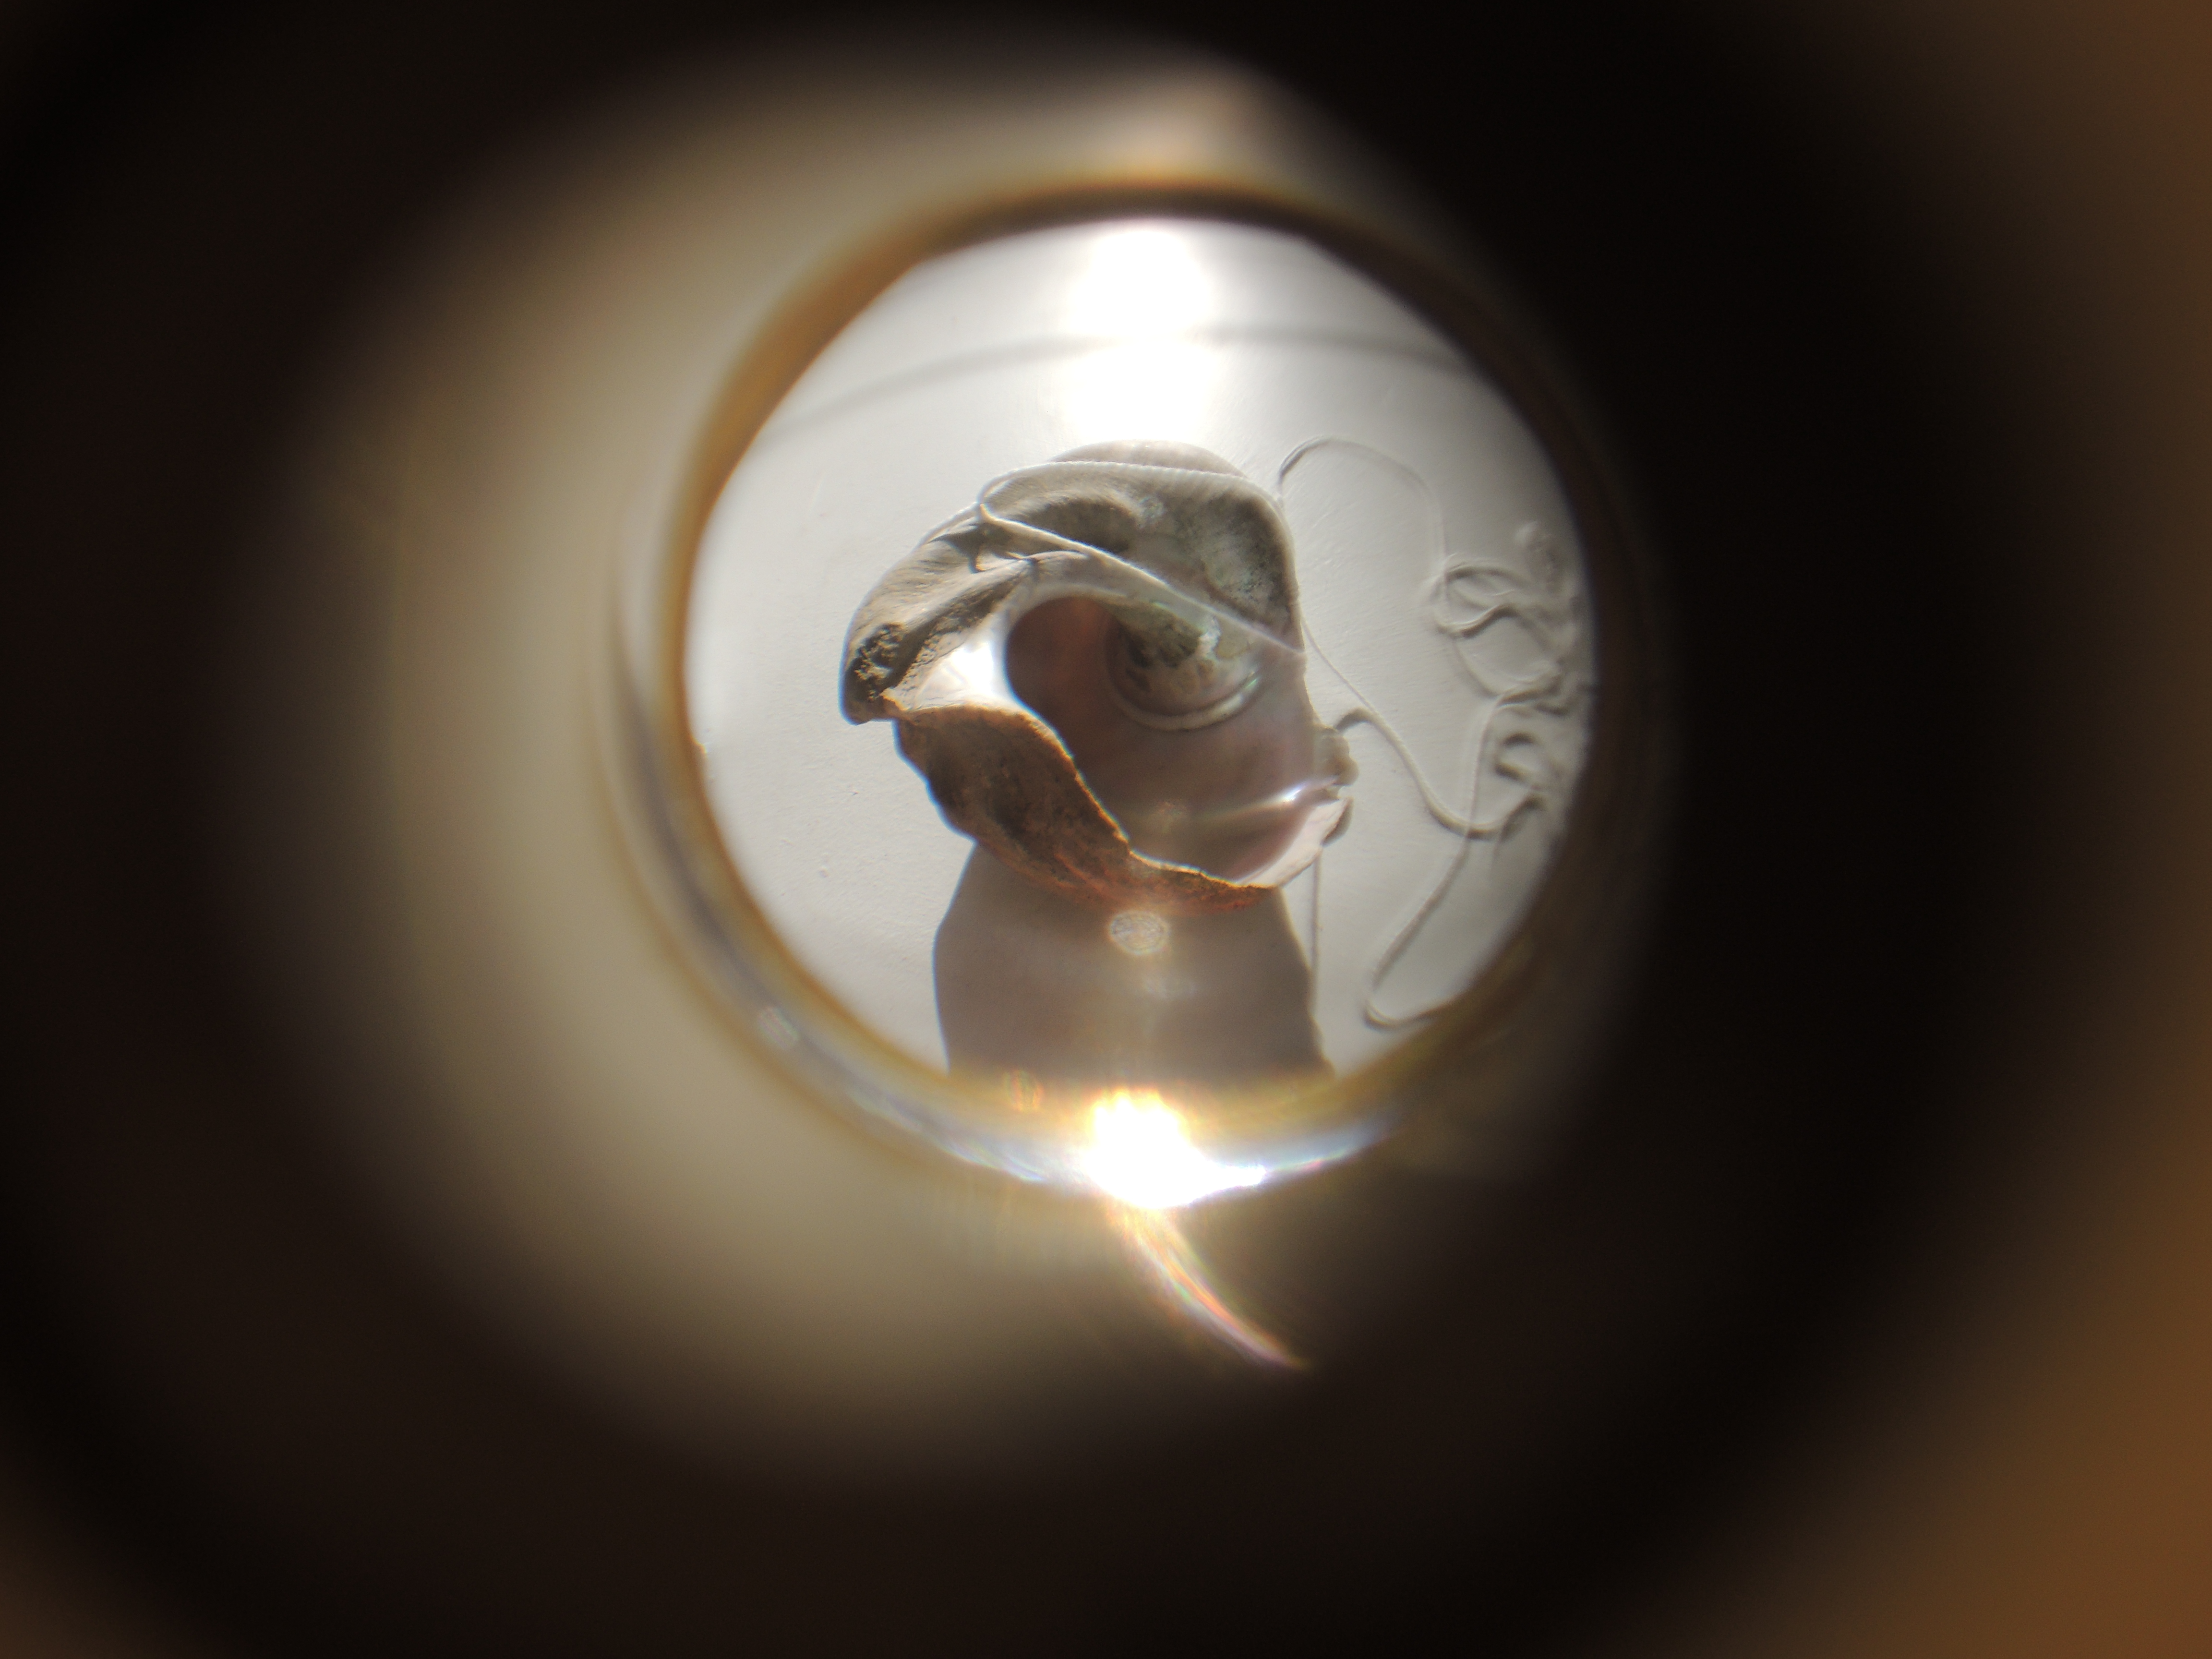 Through the peephole photo